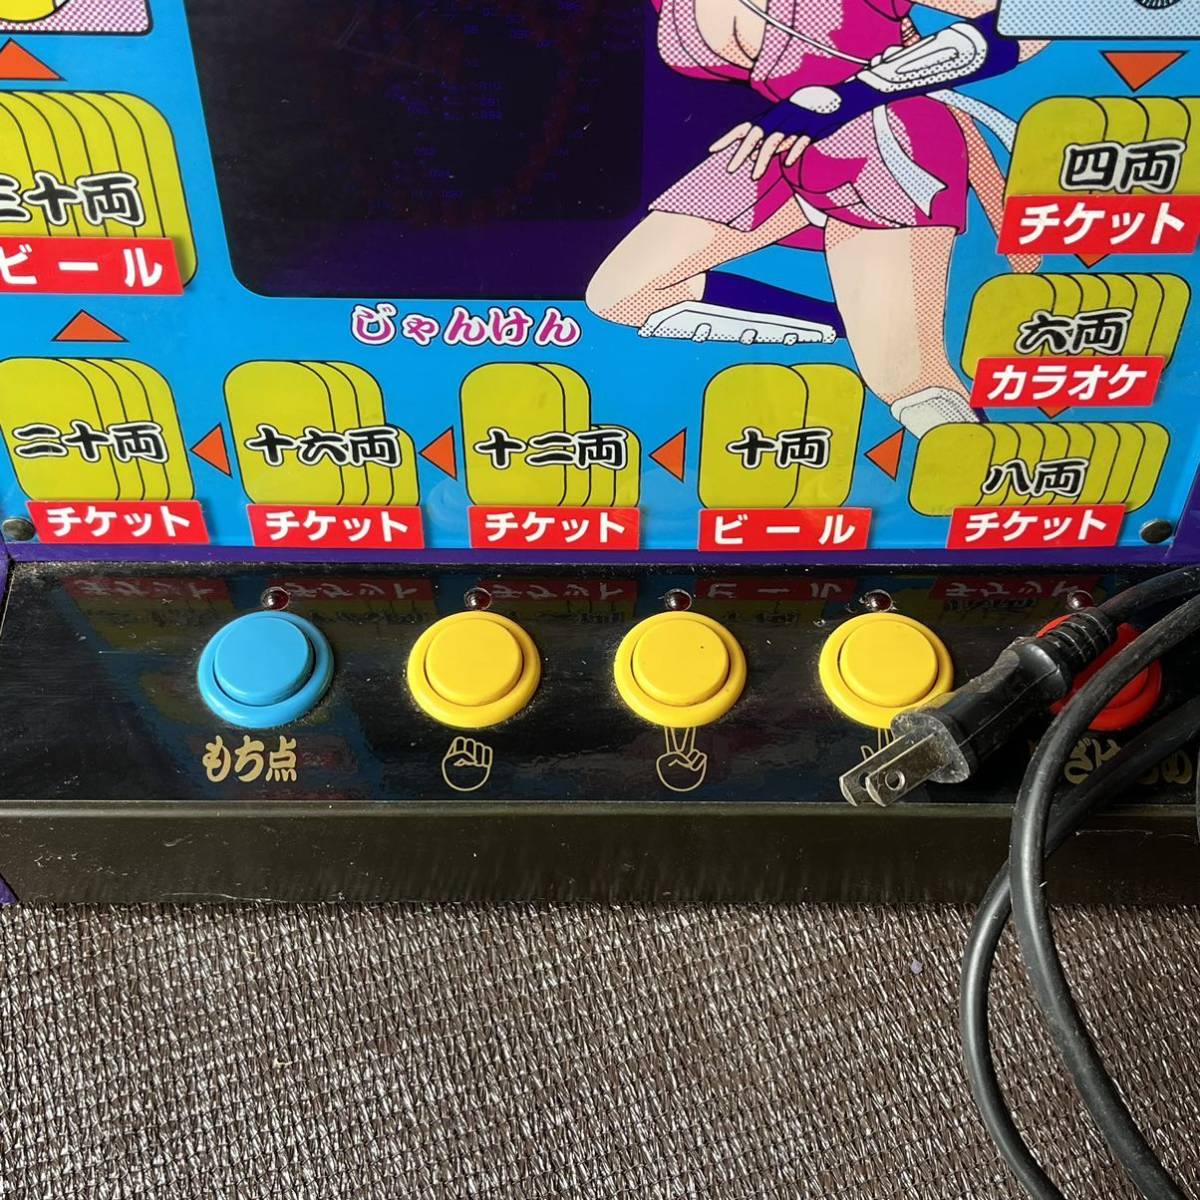  женщина .... состязание! ключ имеется настольный игра машина Showa Retro игра коллекция Vintage подлинная вещь 